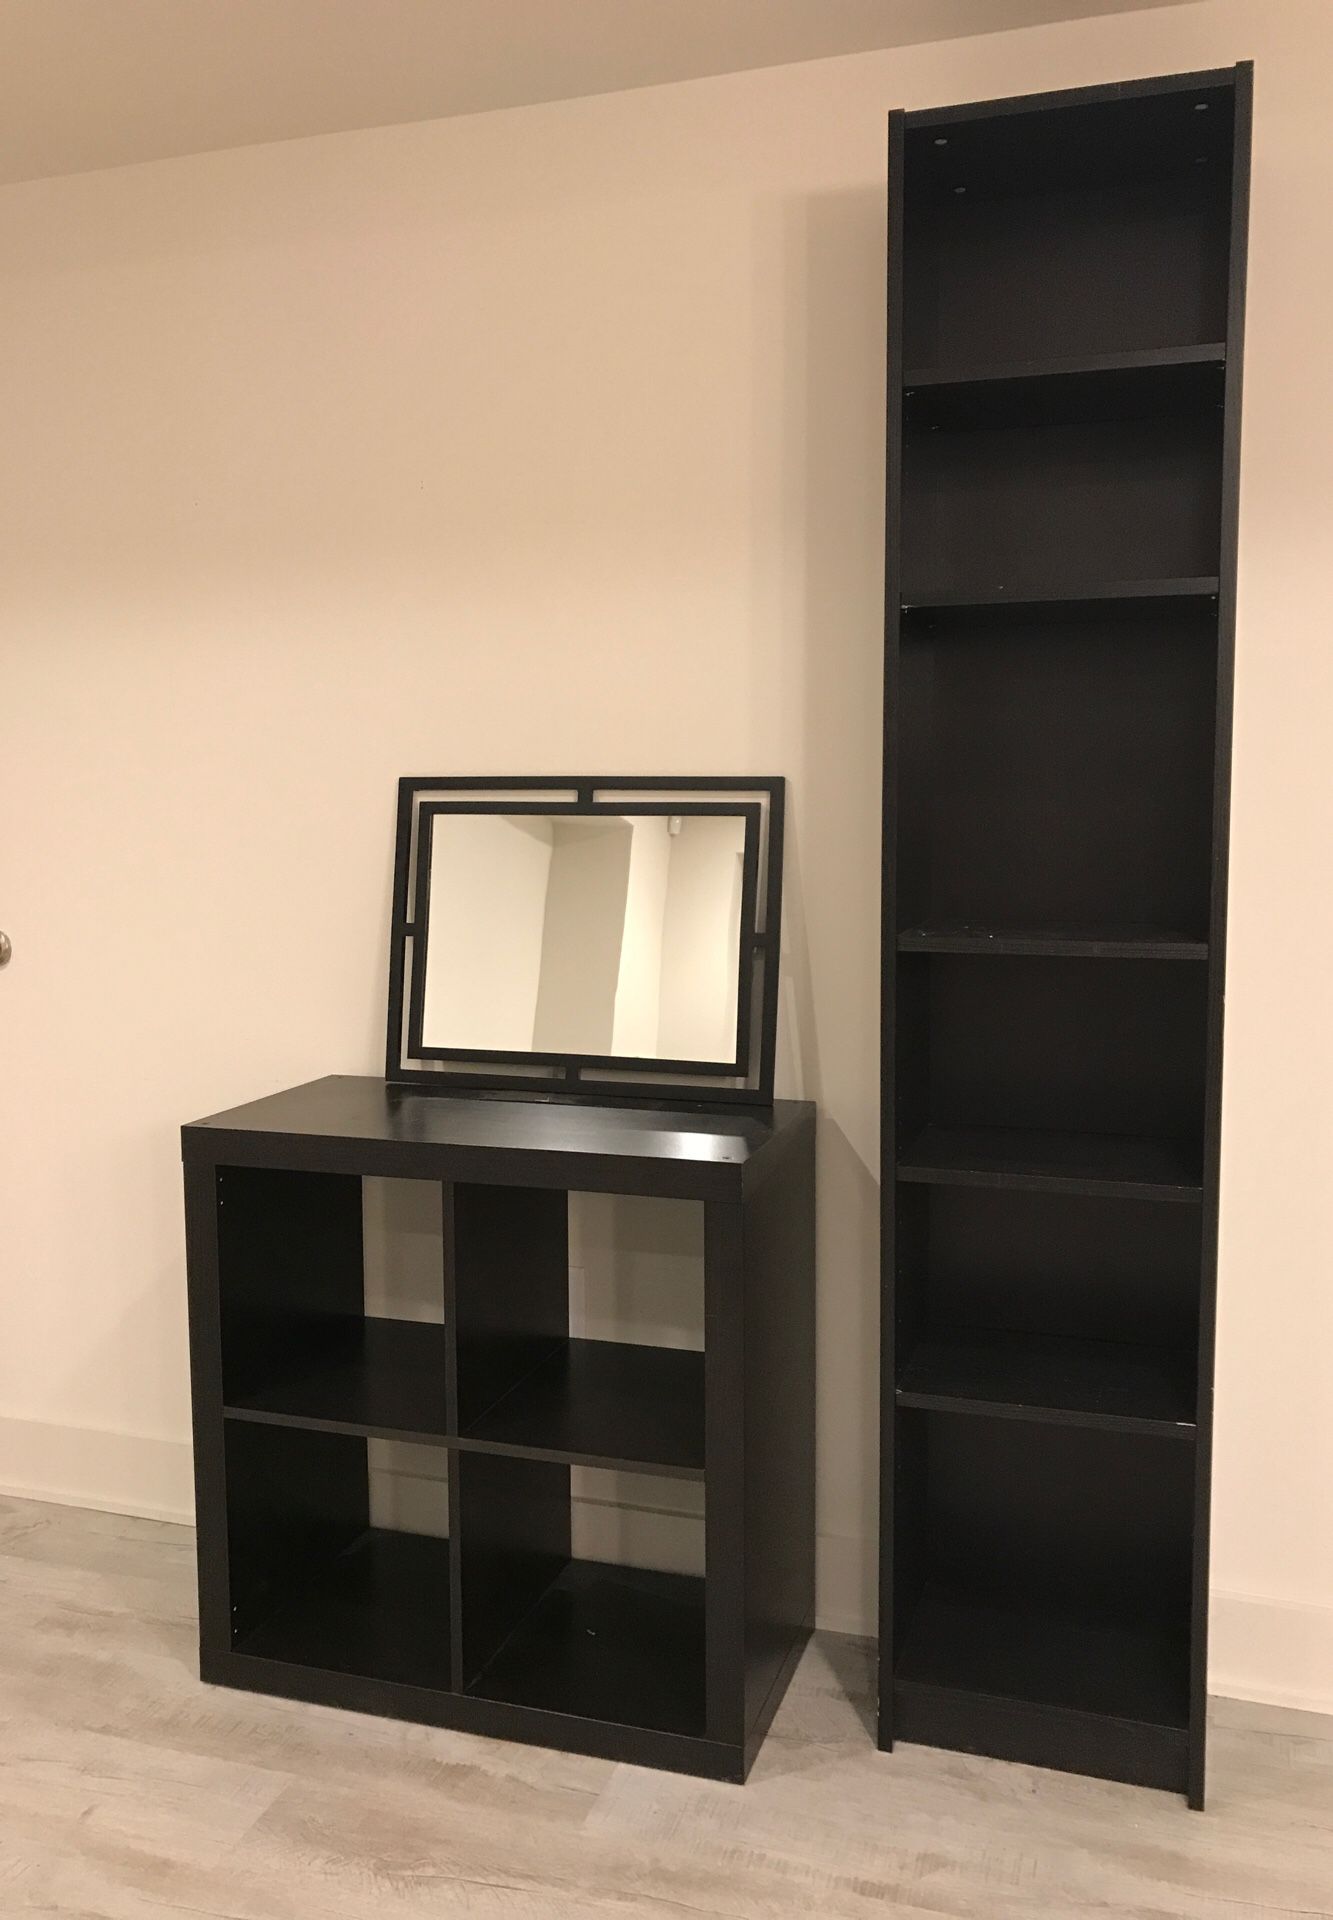 Set of IKEA shelves + mirror